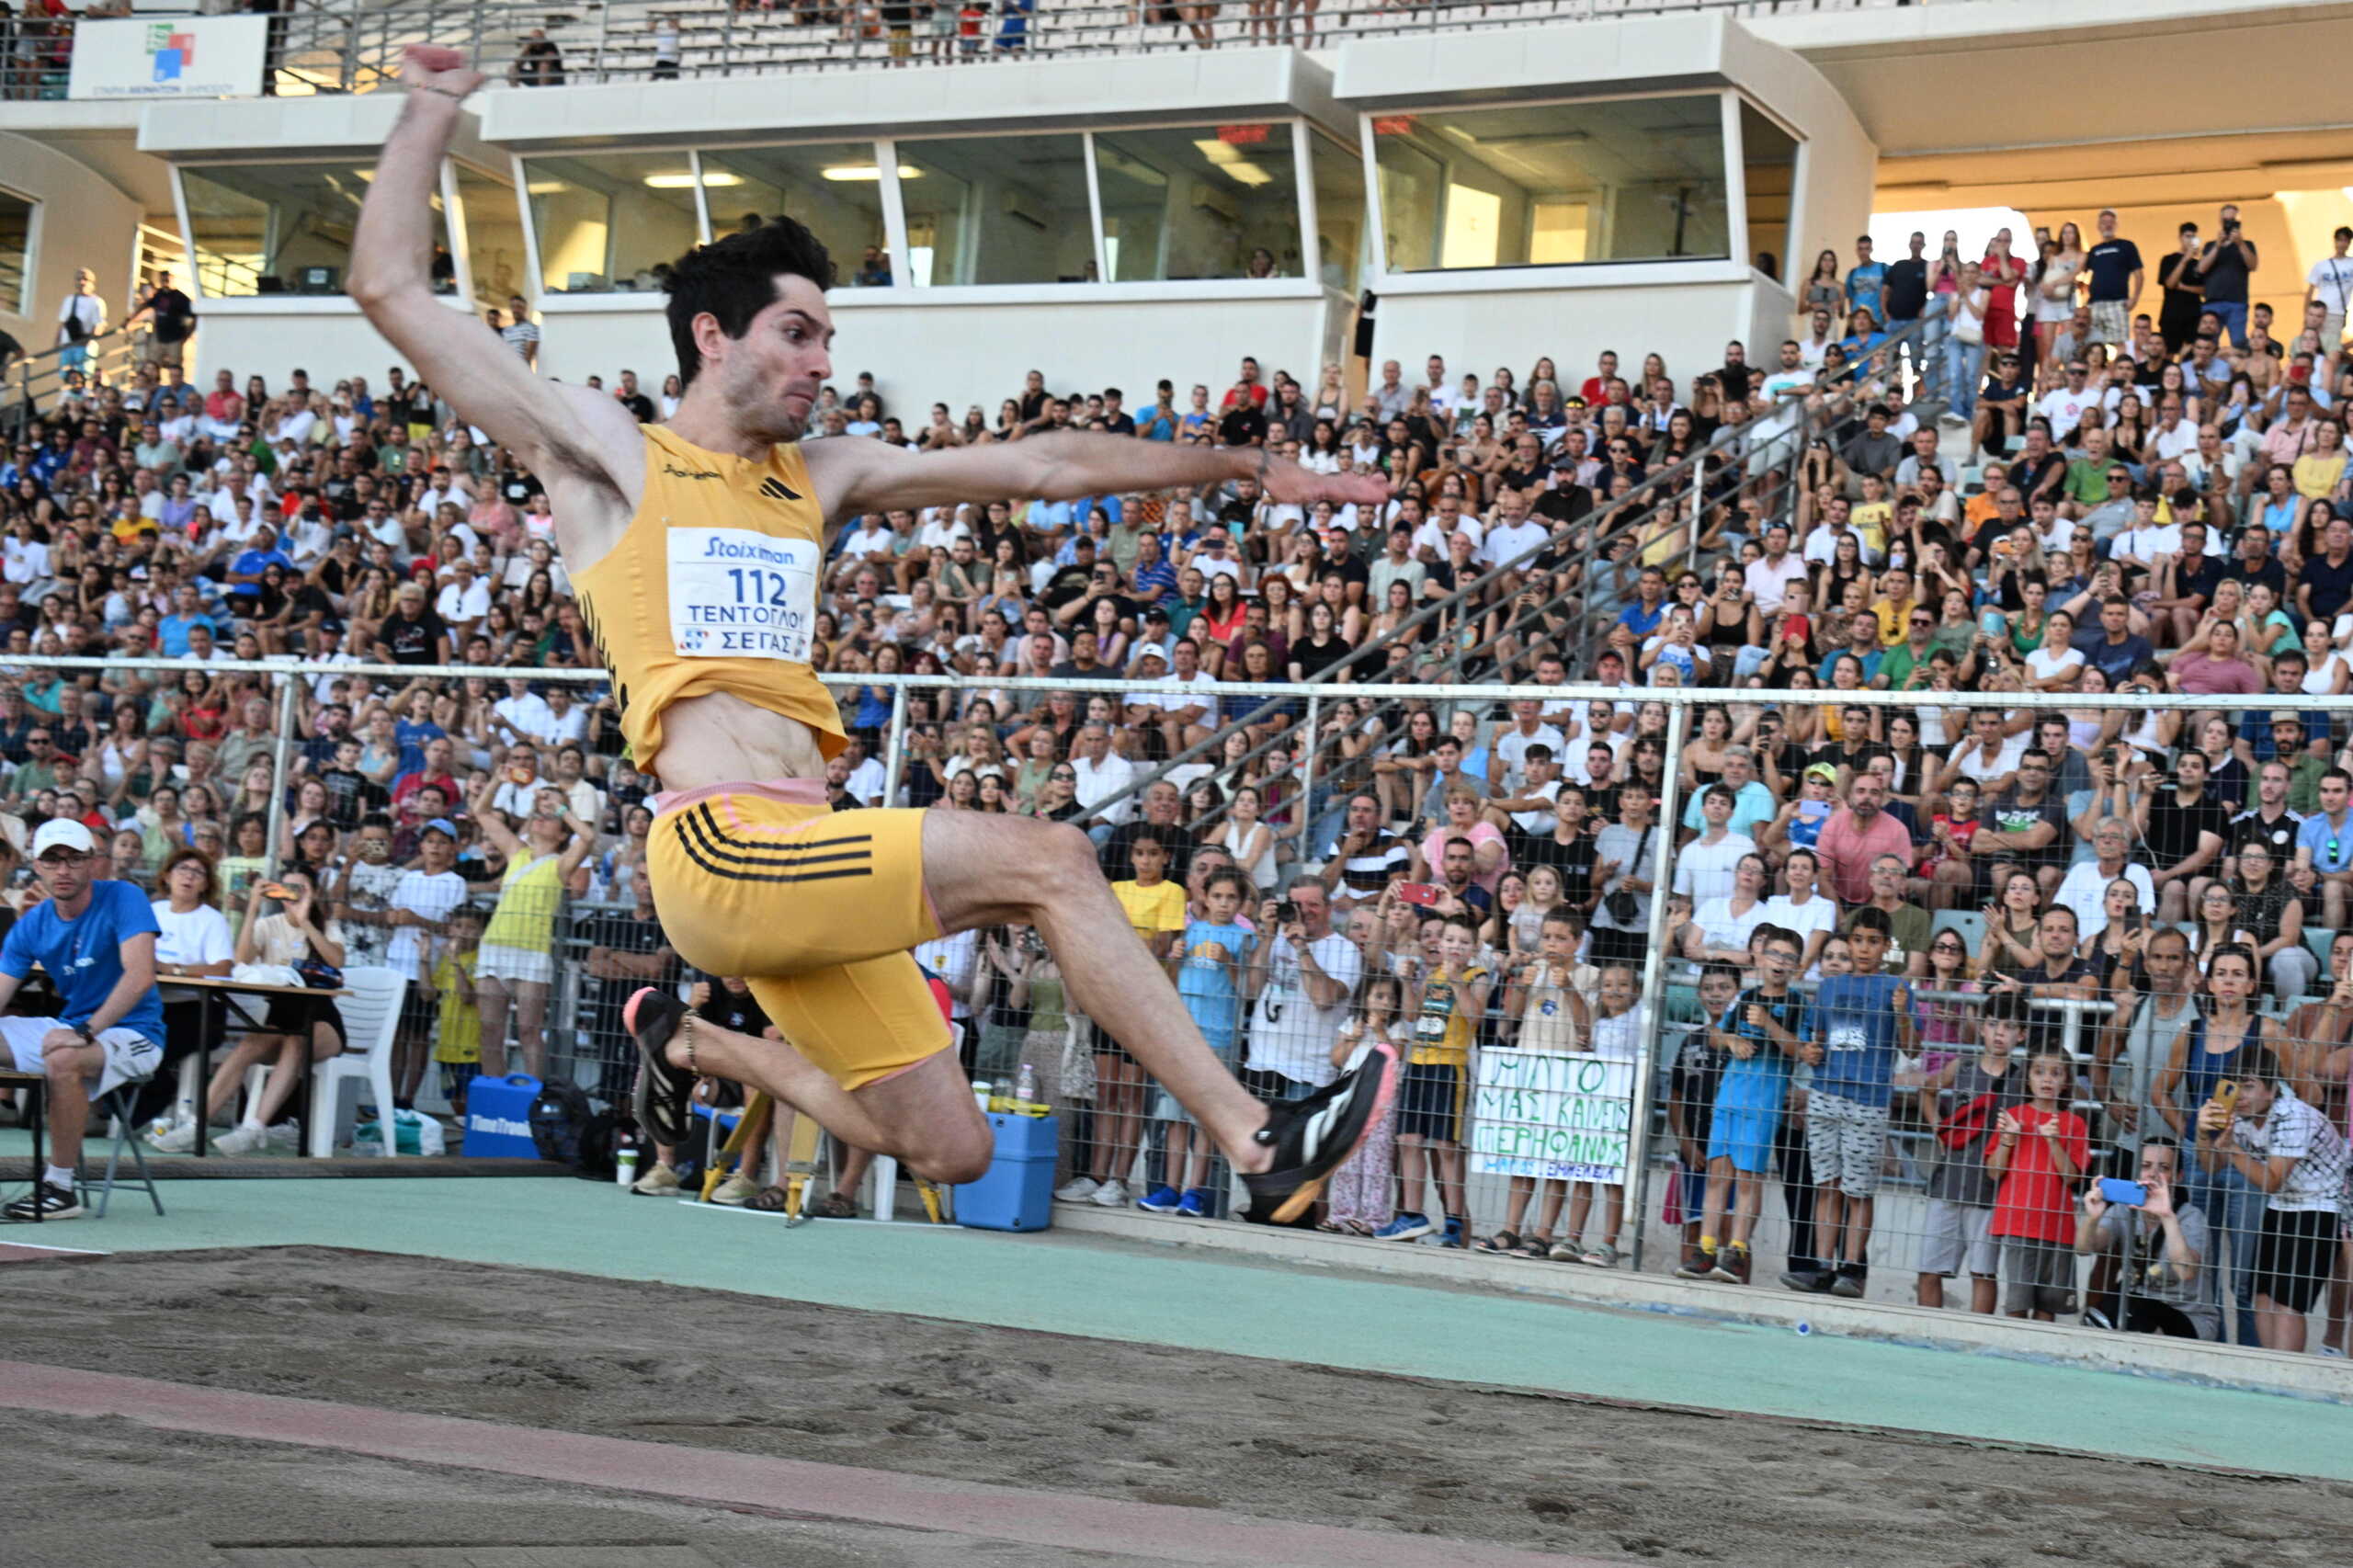 Ο Μίλτος Τεντόγλου «πέταξε» στα 8.42μ. στο Πανελλήνιο πρωτάθλημα στίβου